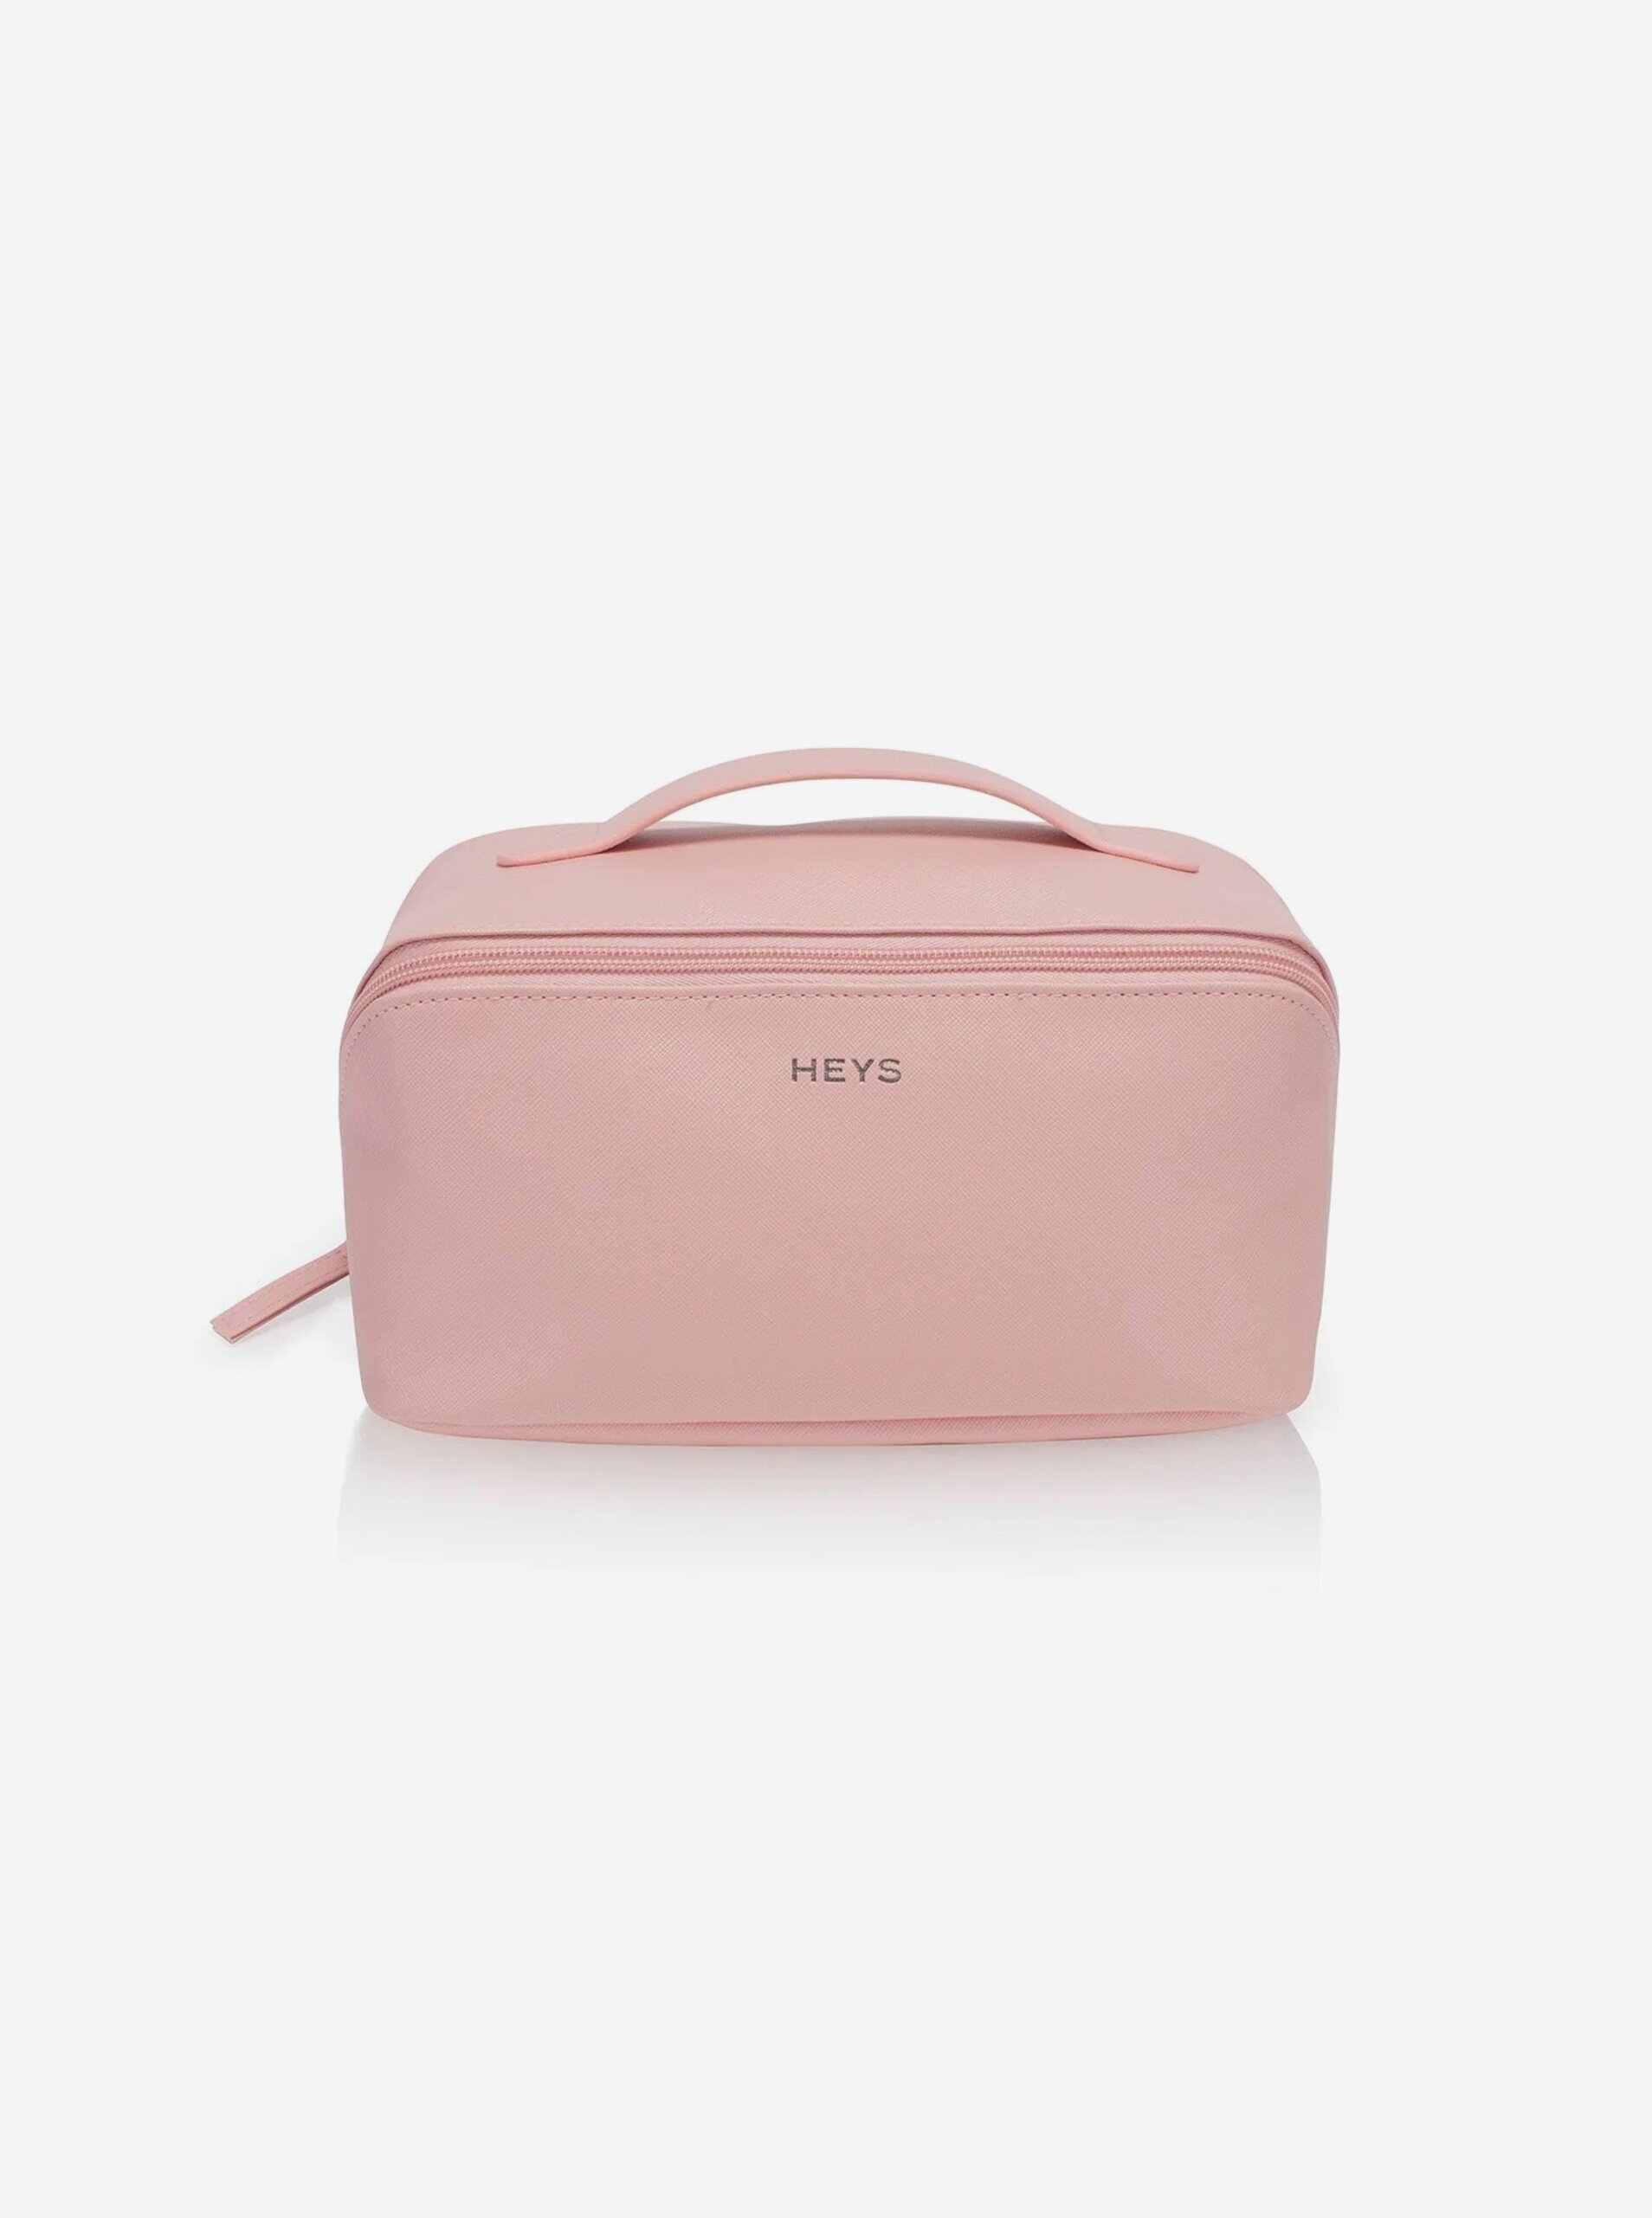 Lacno Ružová dámska kozmetická taška Heys Beauty Bag Rose